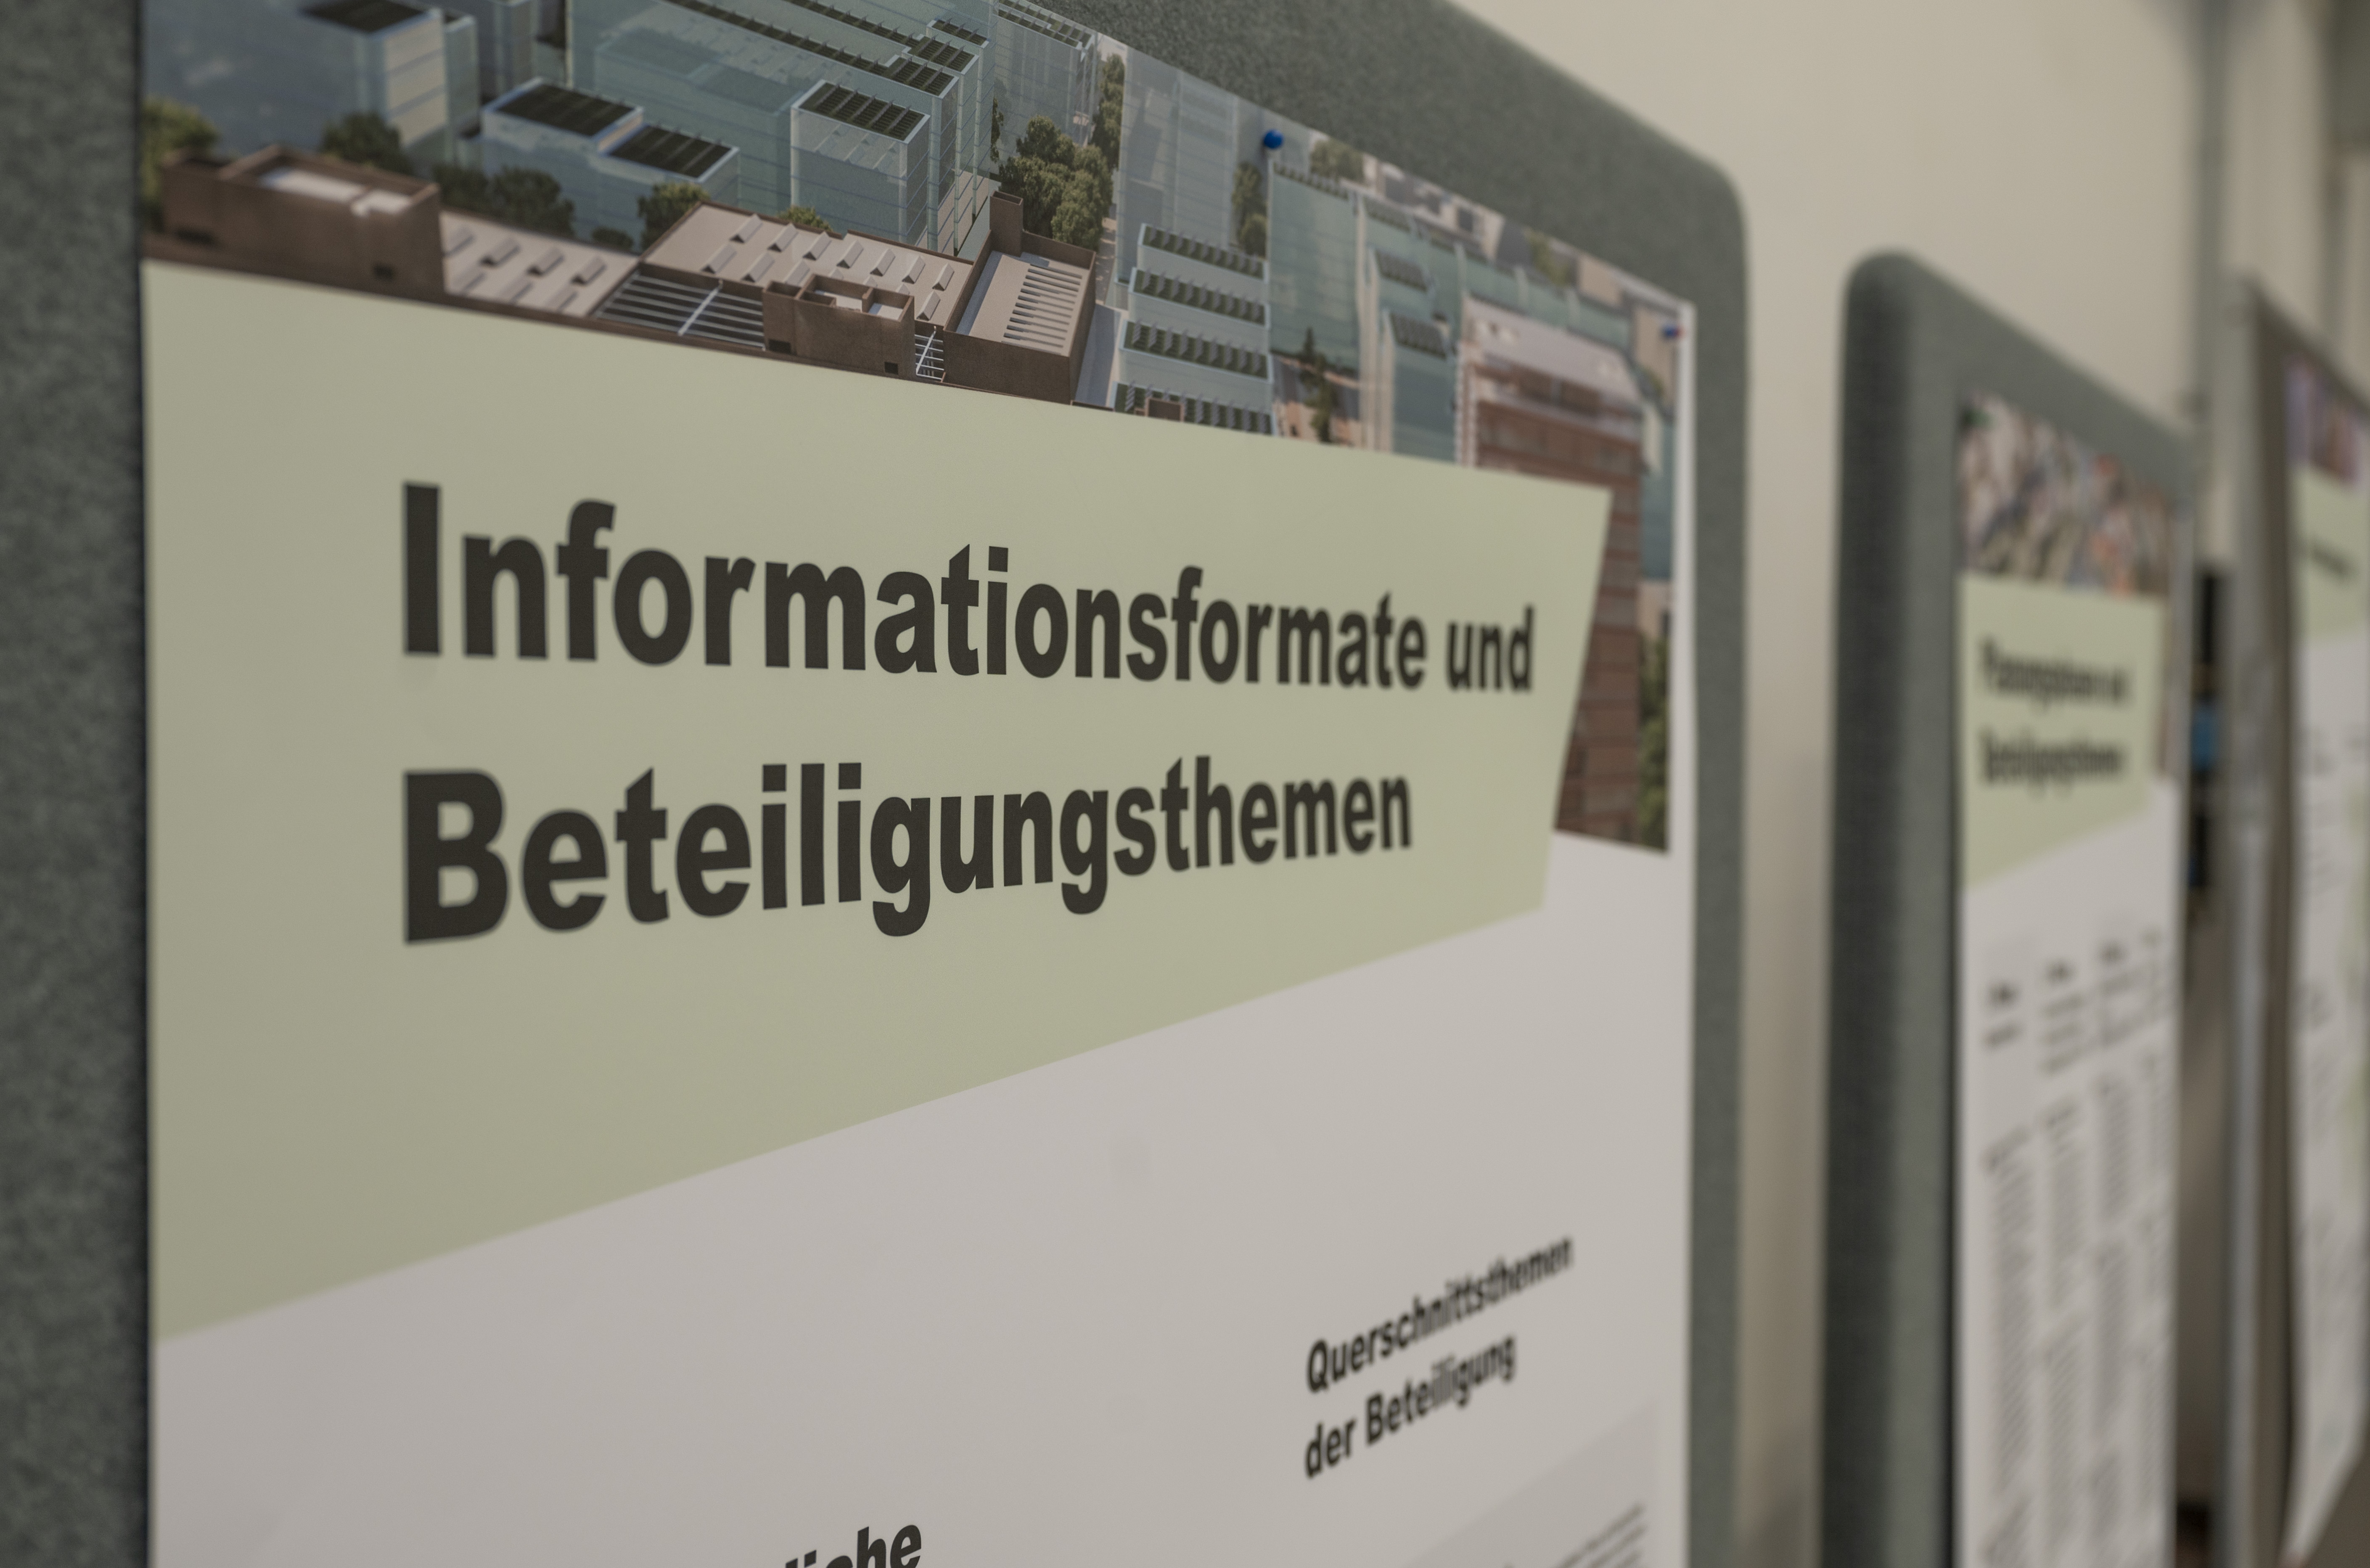  Siemensstadt Square Informations- und Beteiligungsformate